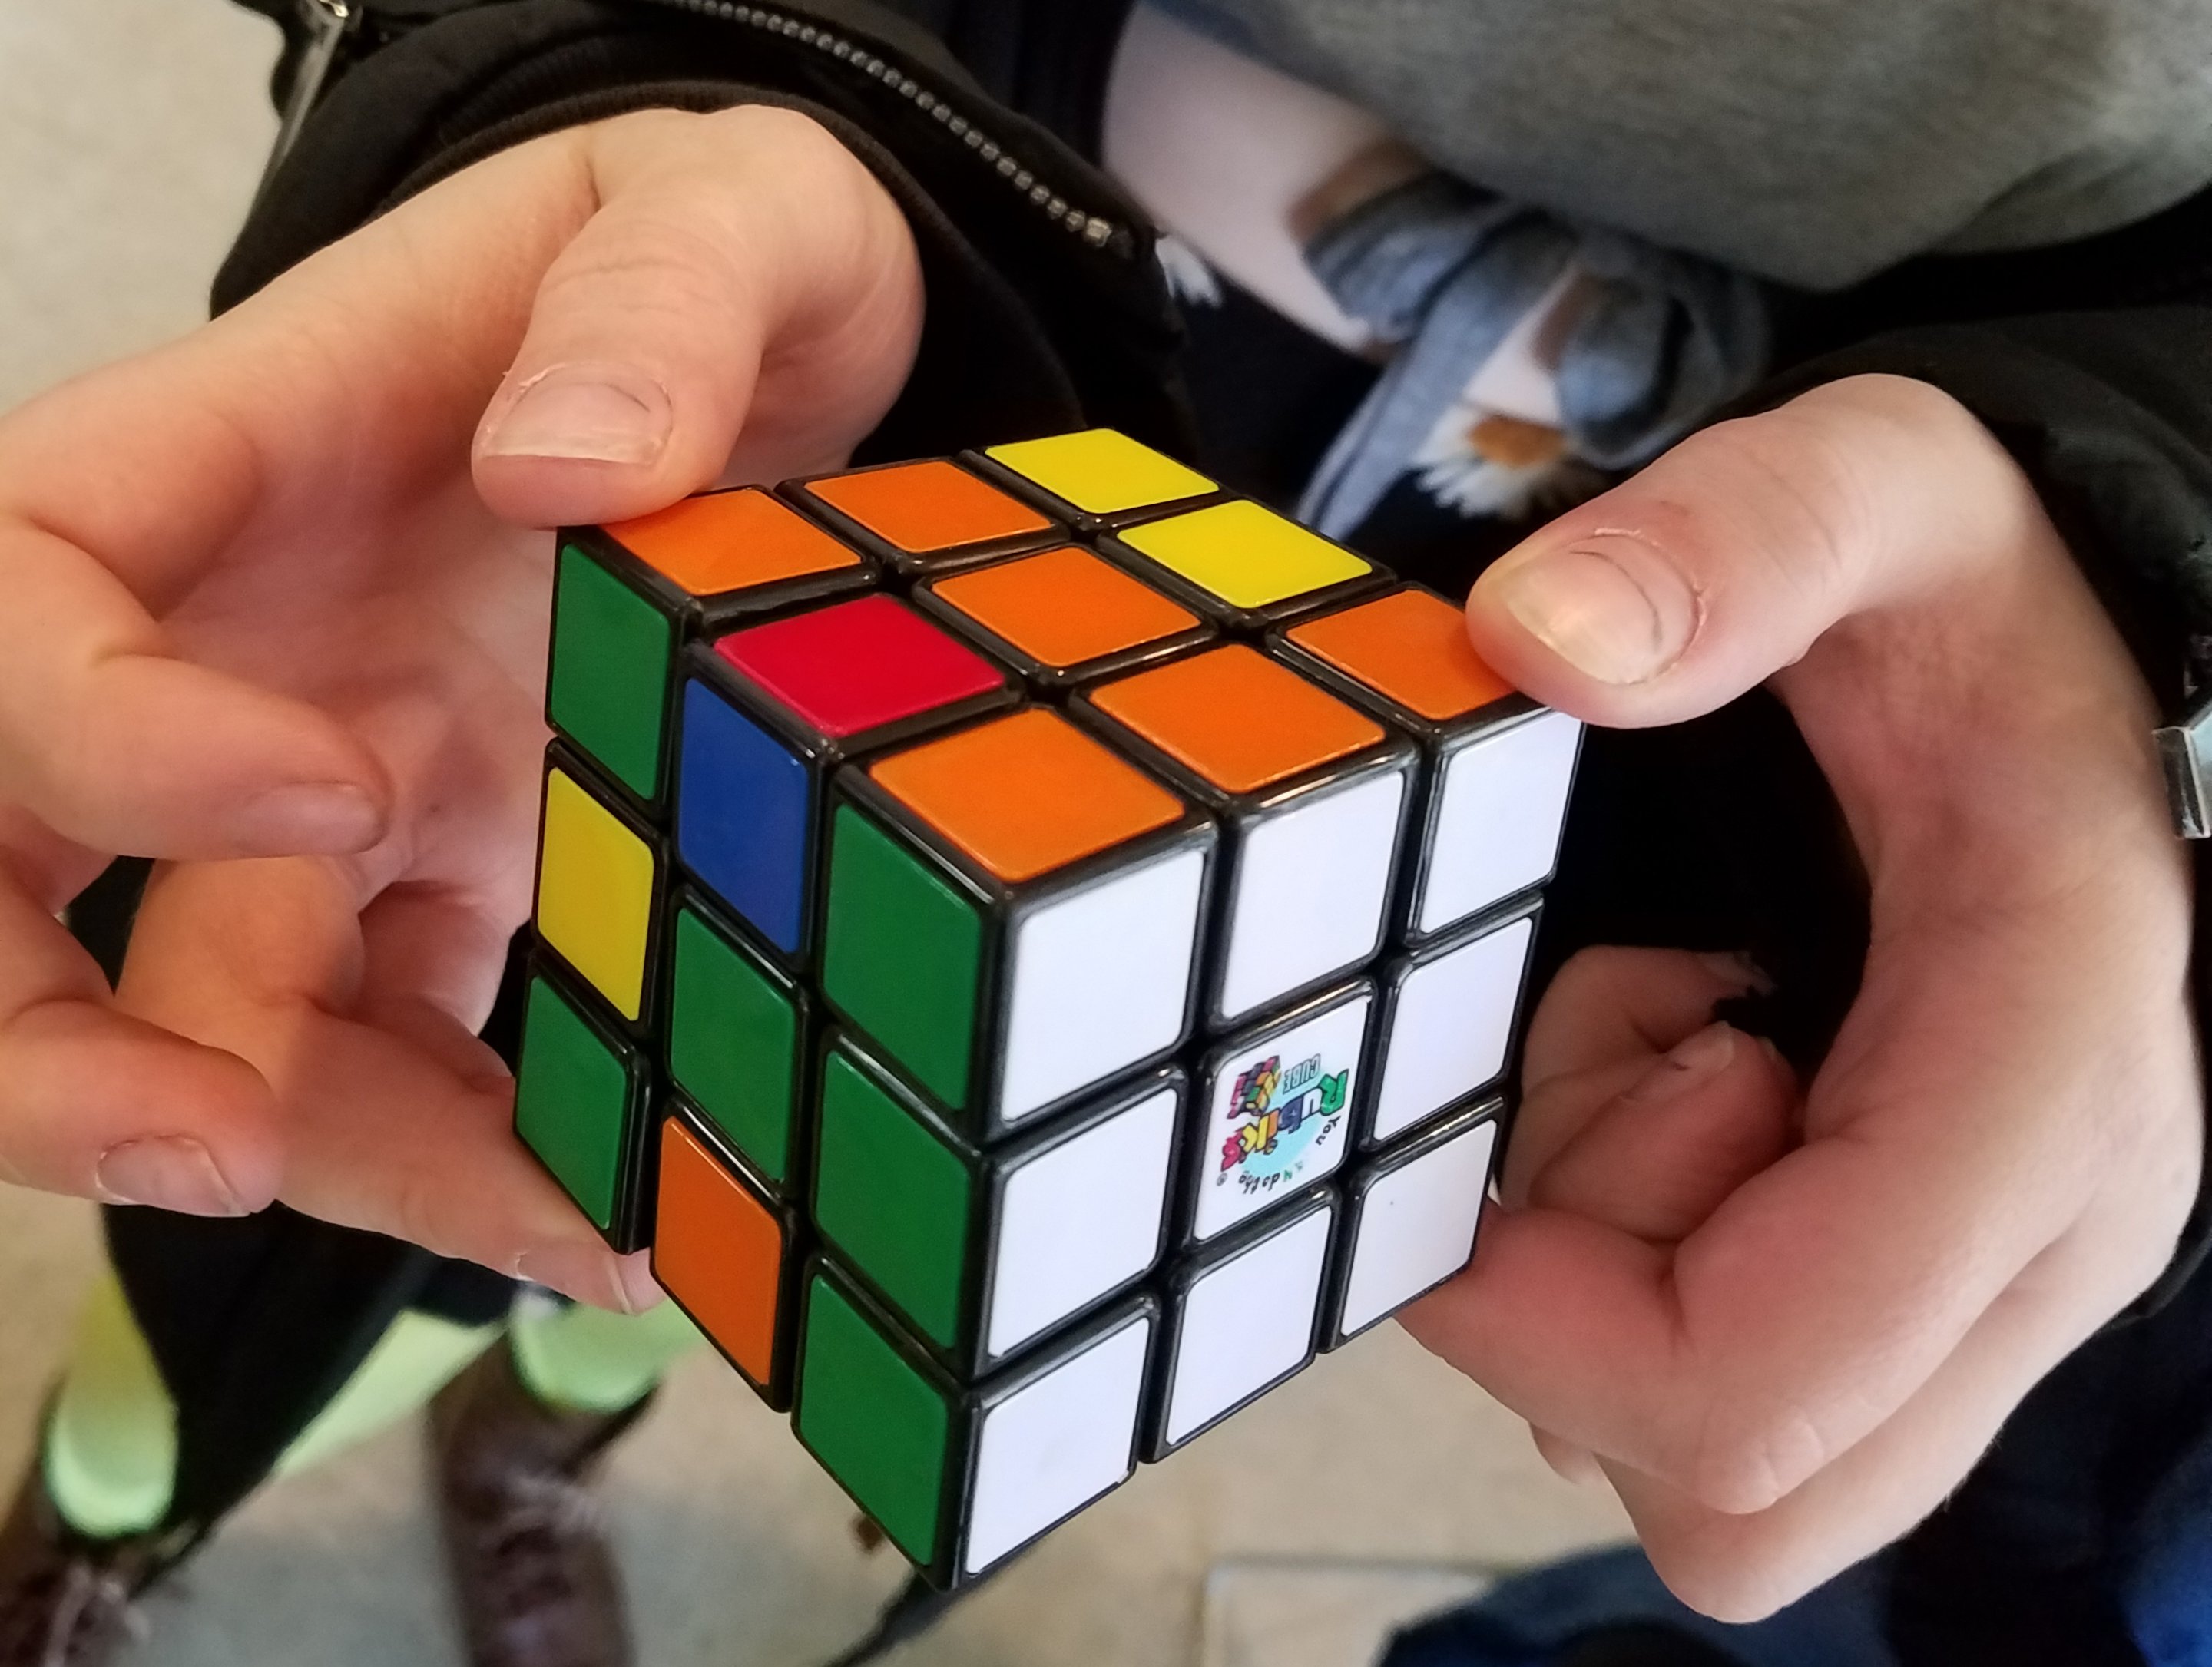 Using Rubik’s Cubes to Teach Math